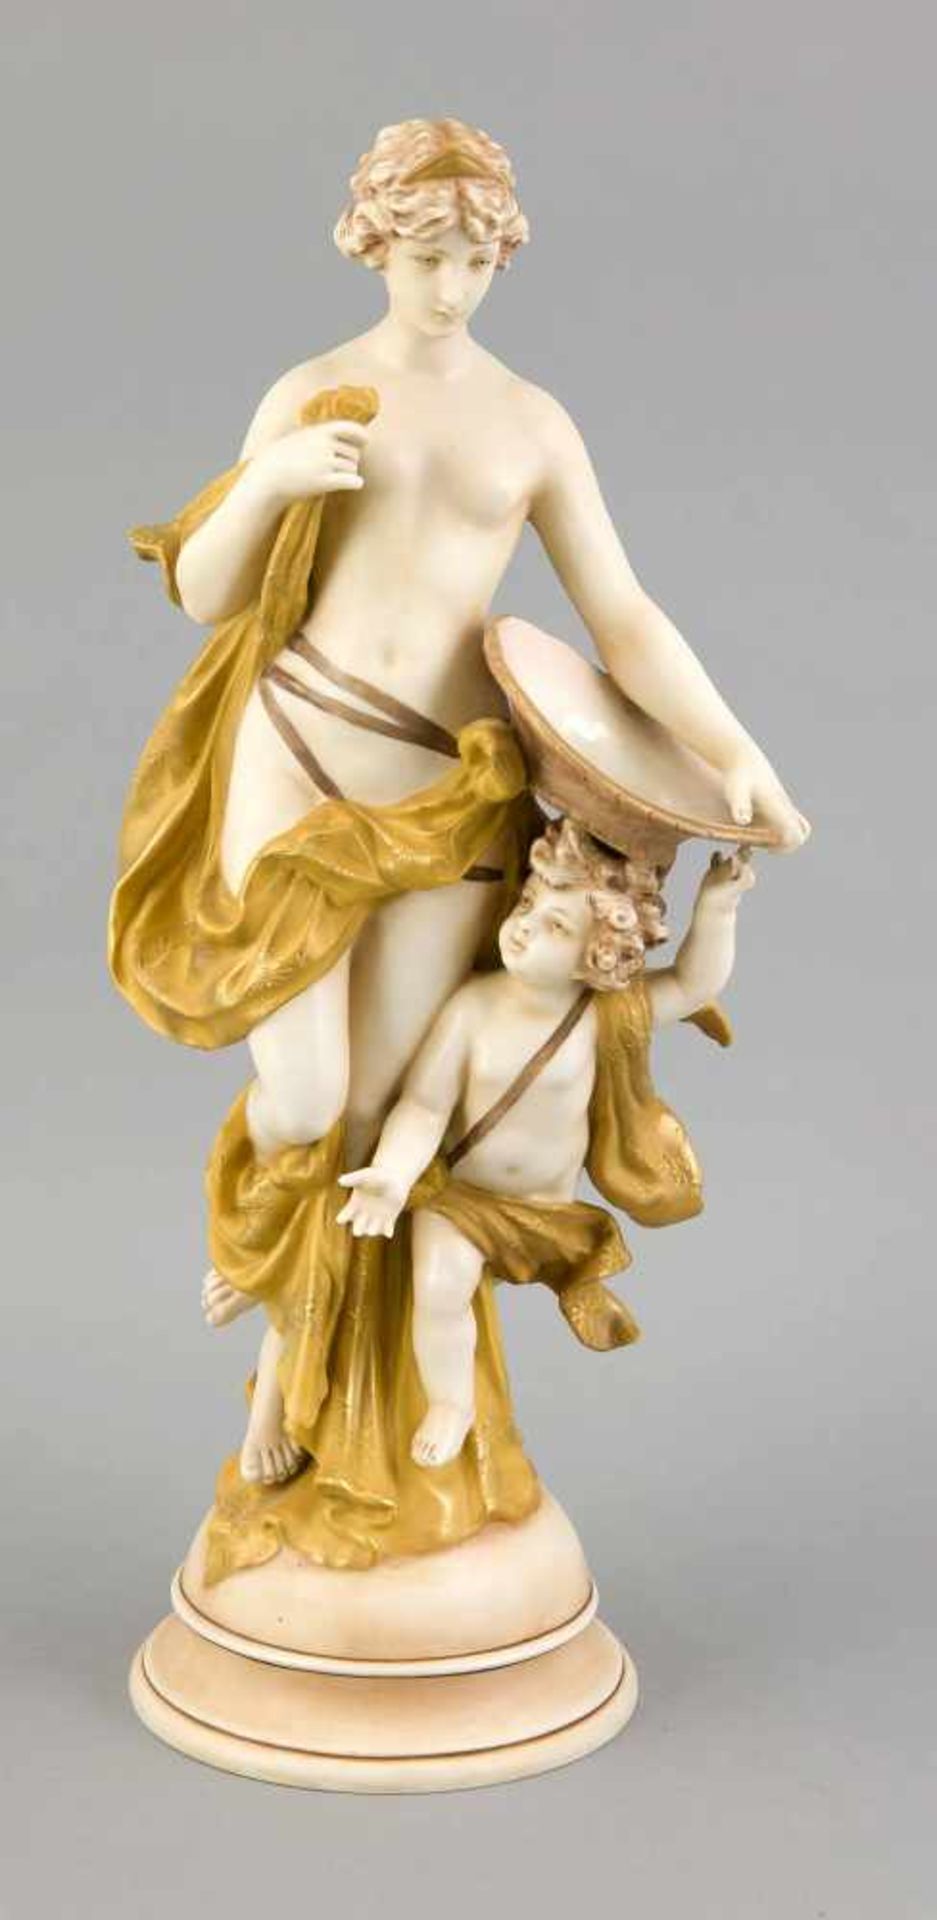 Nymphe und Cupid, w. Böhmen, Marke W & R Made in Austria, leicht bekleidete Nymphe mit Cupid, w.